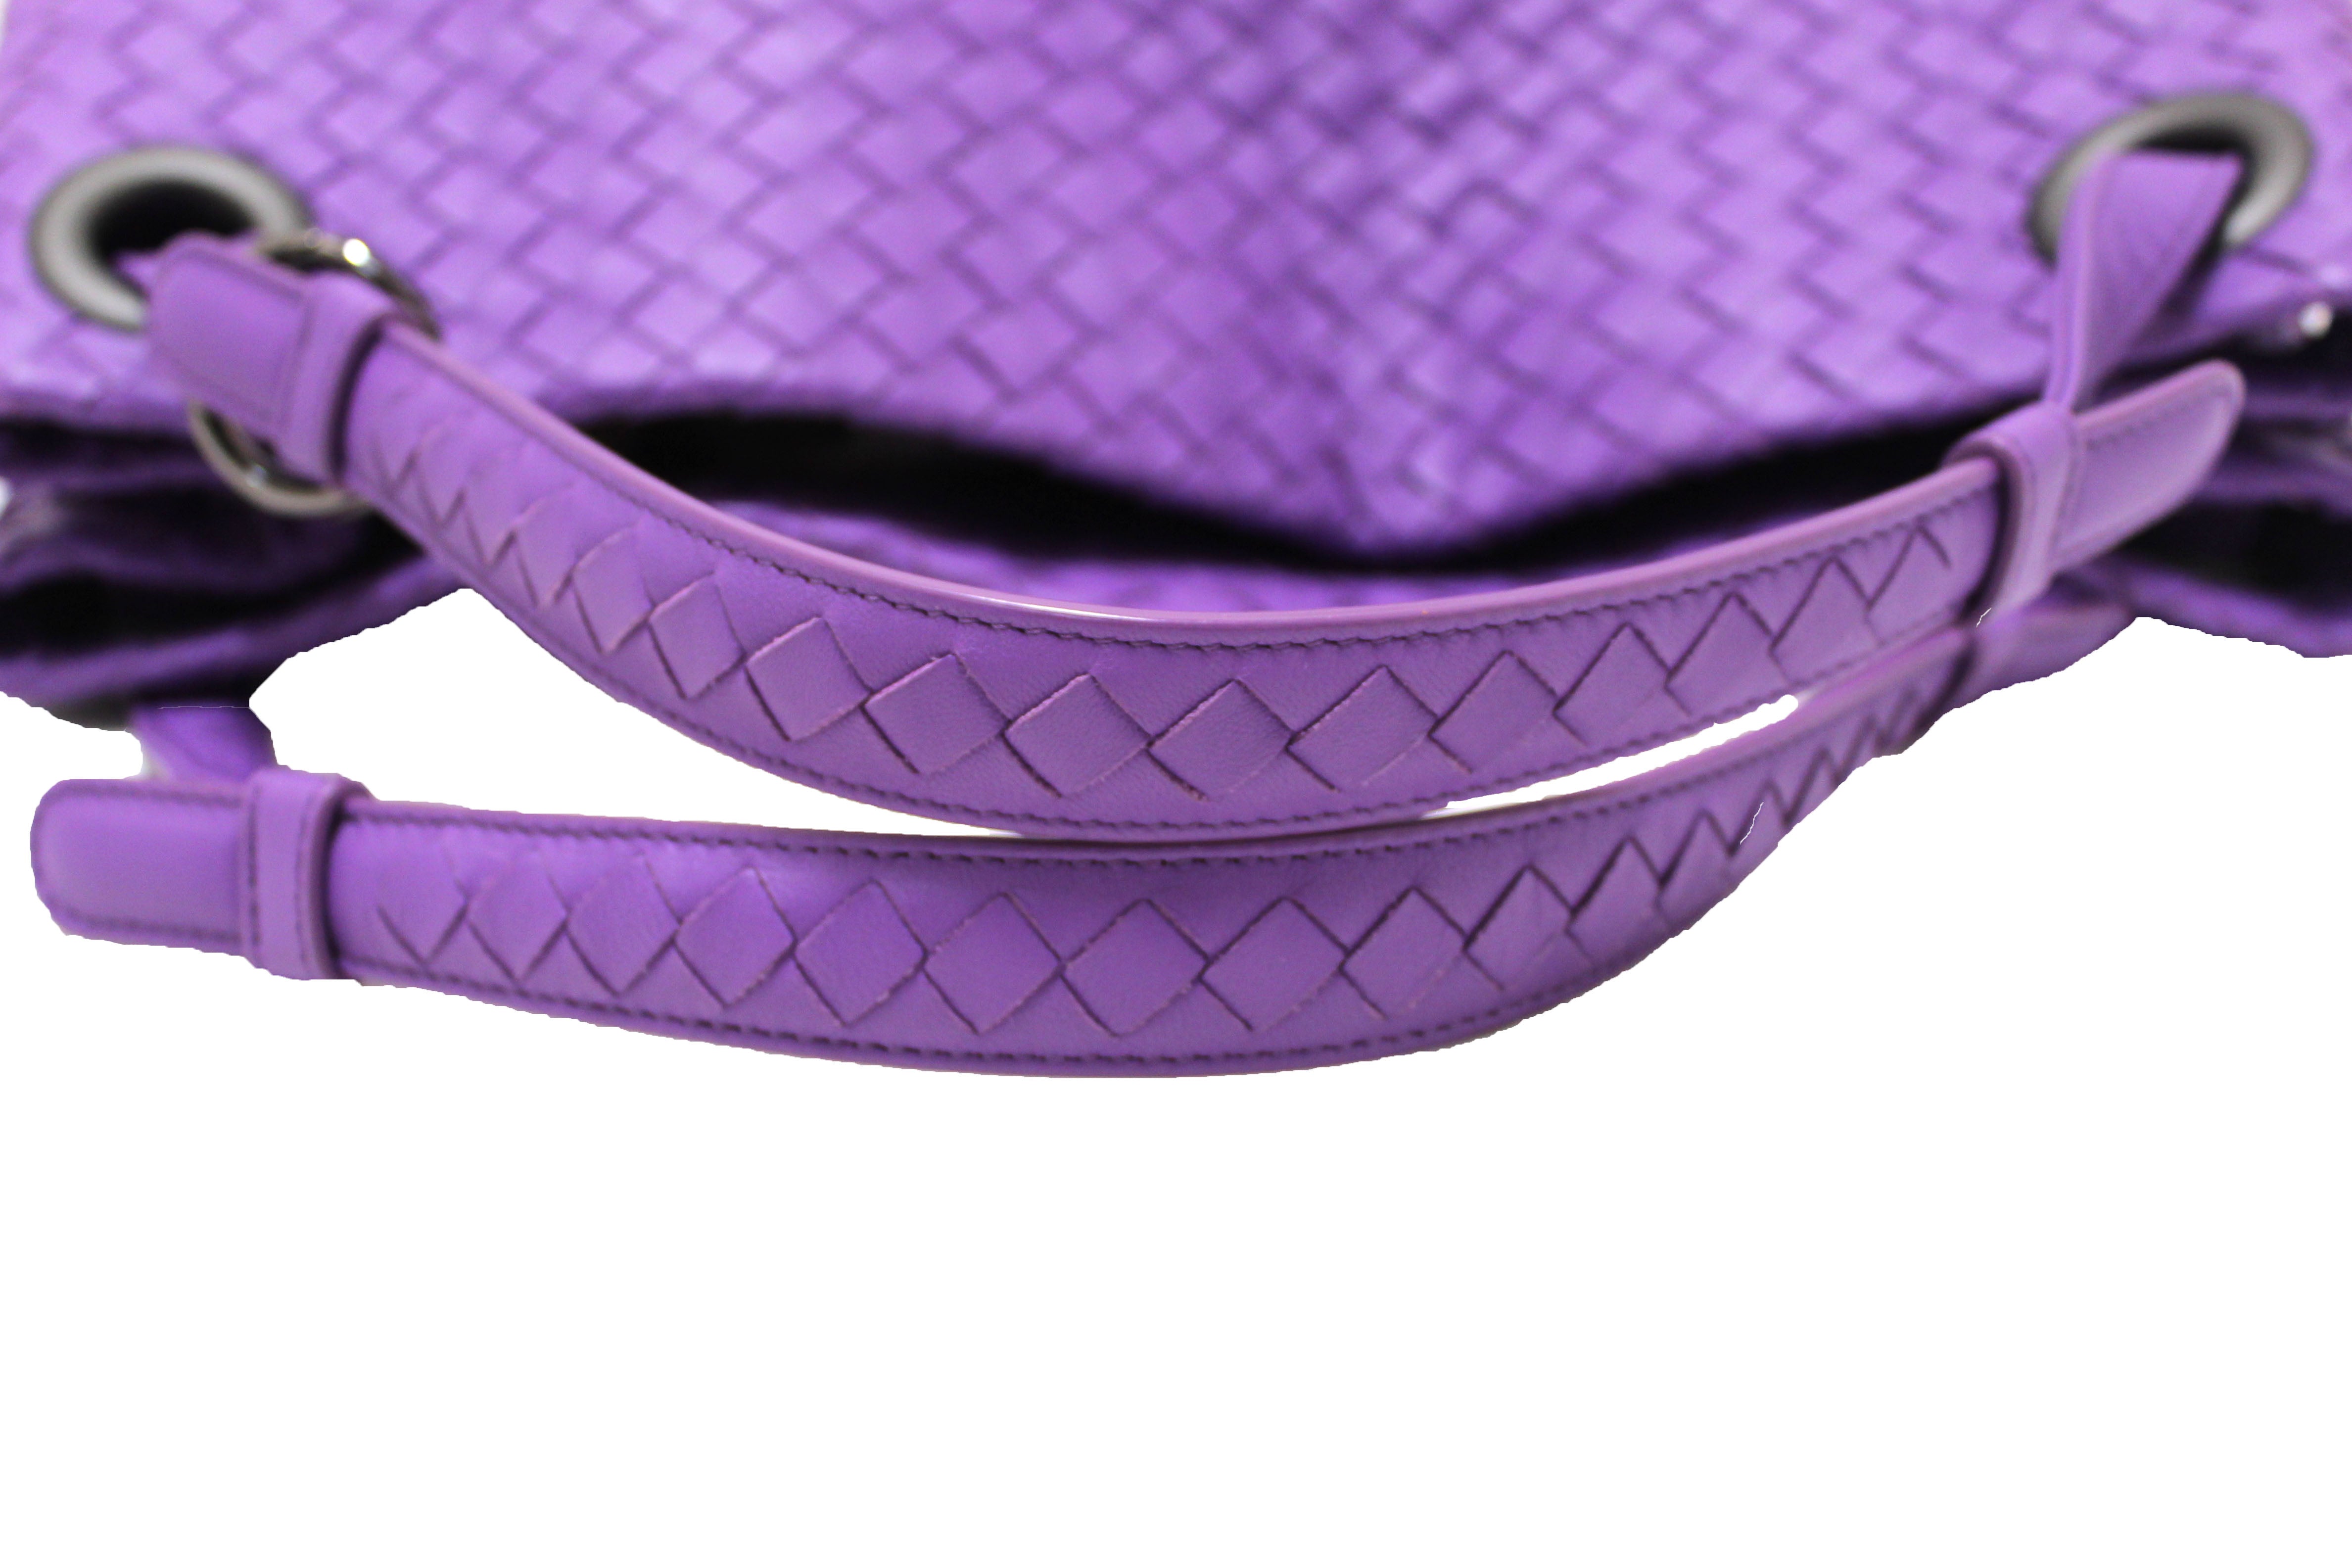 Bottega Veneta Intrecciato Leather Wallet on Strap Purple